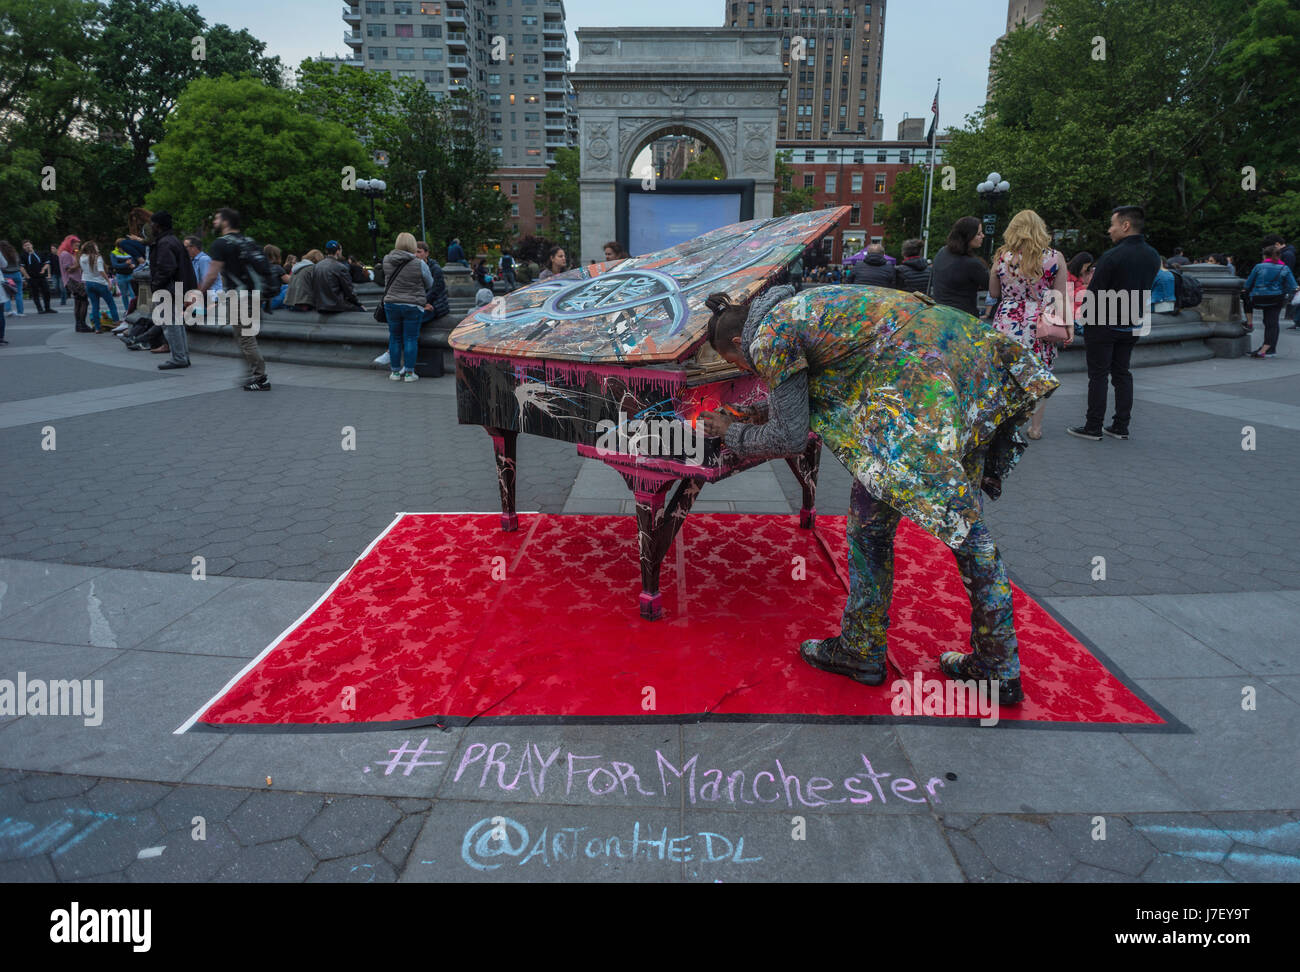 Nueva York, Estados Unidos, 24 de mayo de 2014 - silent Piano, una candlelight memorial por las víctimas del atentado terrorista de Manchester, por Daniel Leviyev,en el parque Washington Square ©Stacy Walsh Rosenstock/Alamy Foto de stock